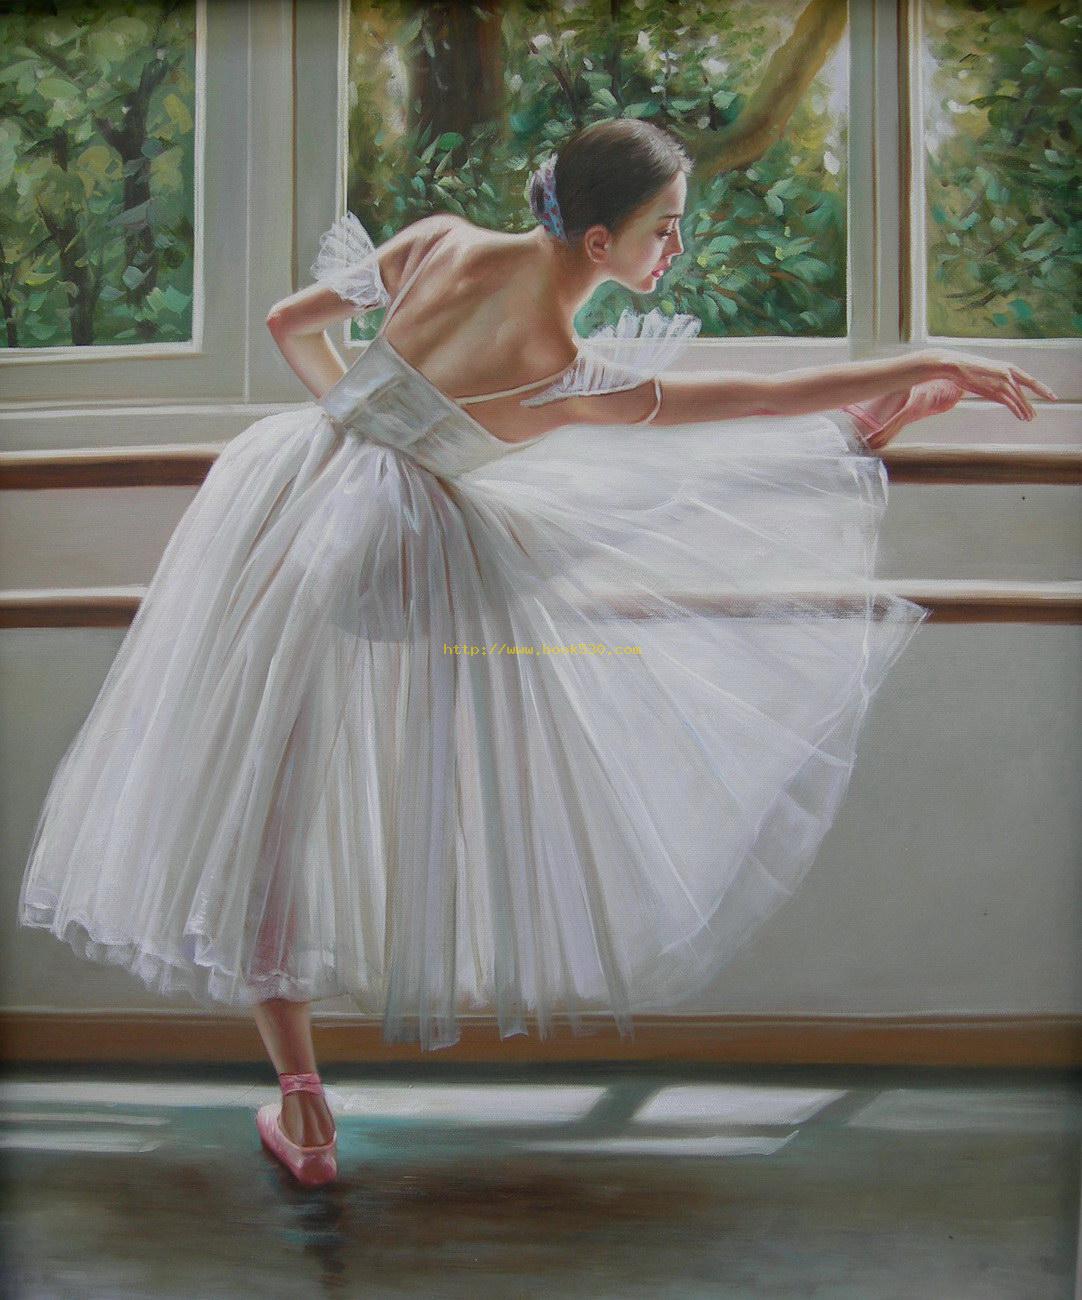 http://1.bp.blogspot.com/-EVLAxhuauNg/UEmNDbUzQXI/AAAAAAAACPU/XpTqJGC4-dk/s1600/Ballet-beautiful-girls-oil-painting.jpg